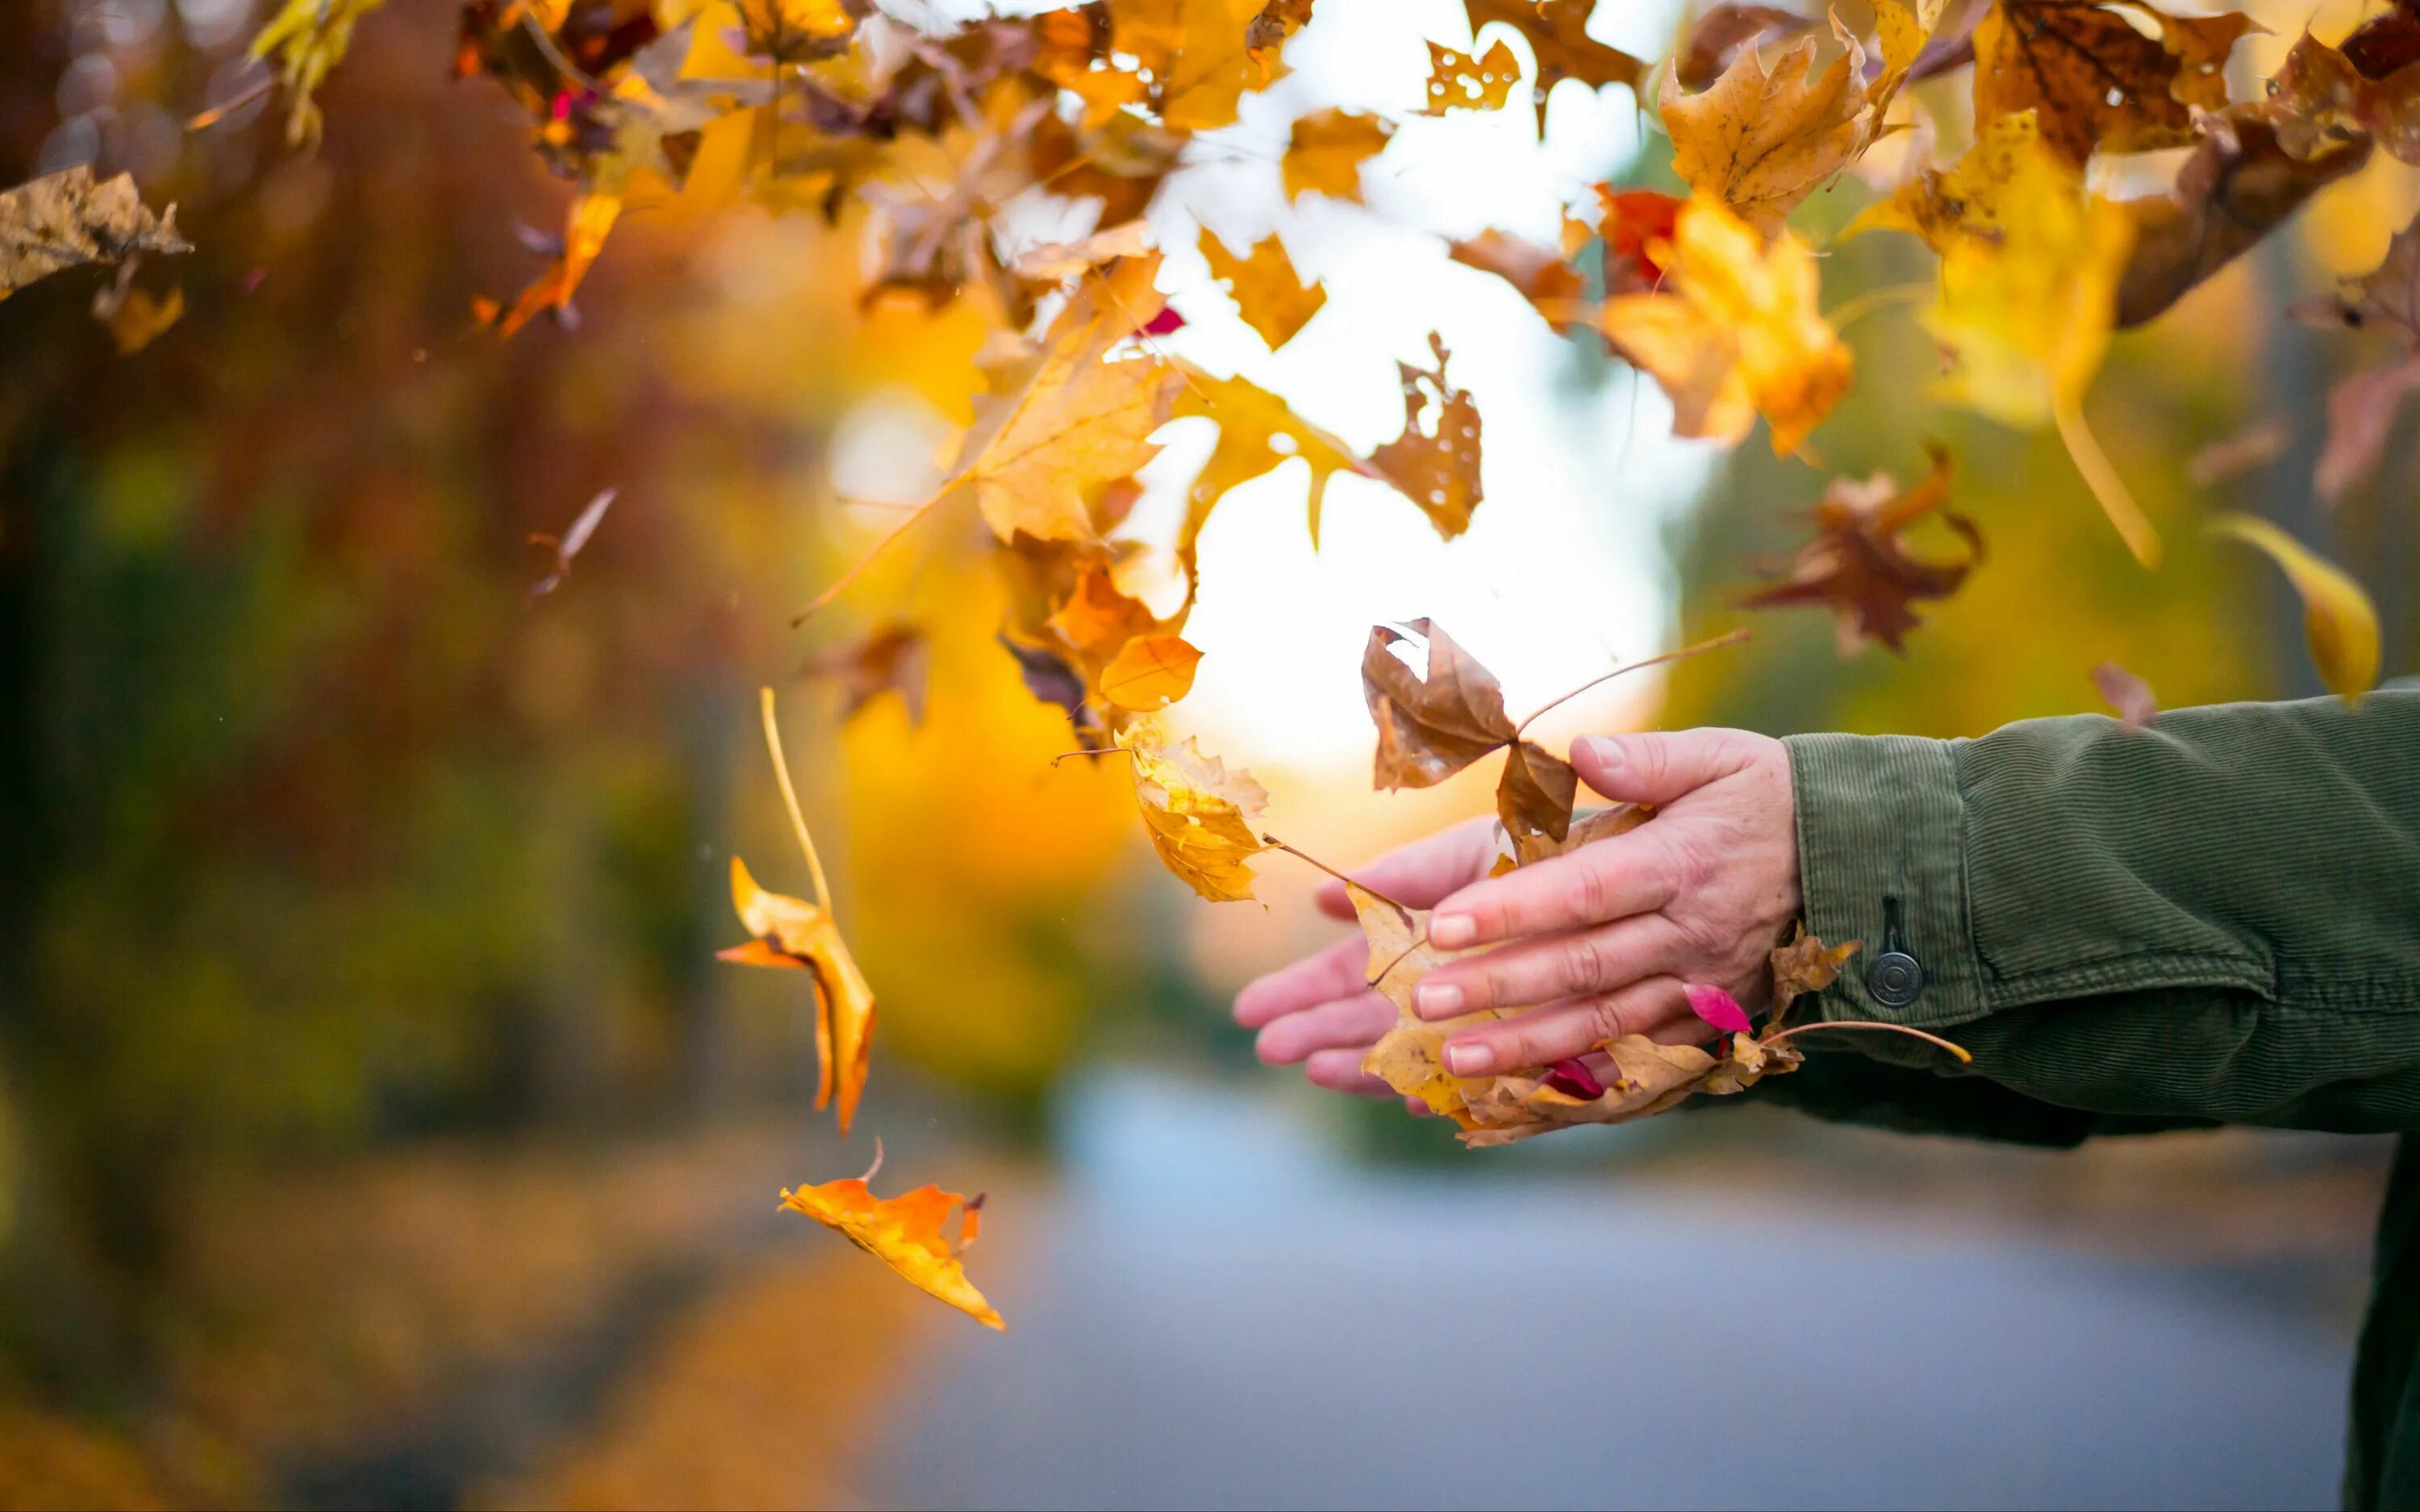 Словно листья на ветру. Осенний лист в руке. Лист в руке. Осенний лист на ладони. Осень люди.